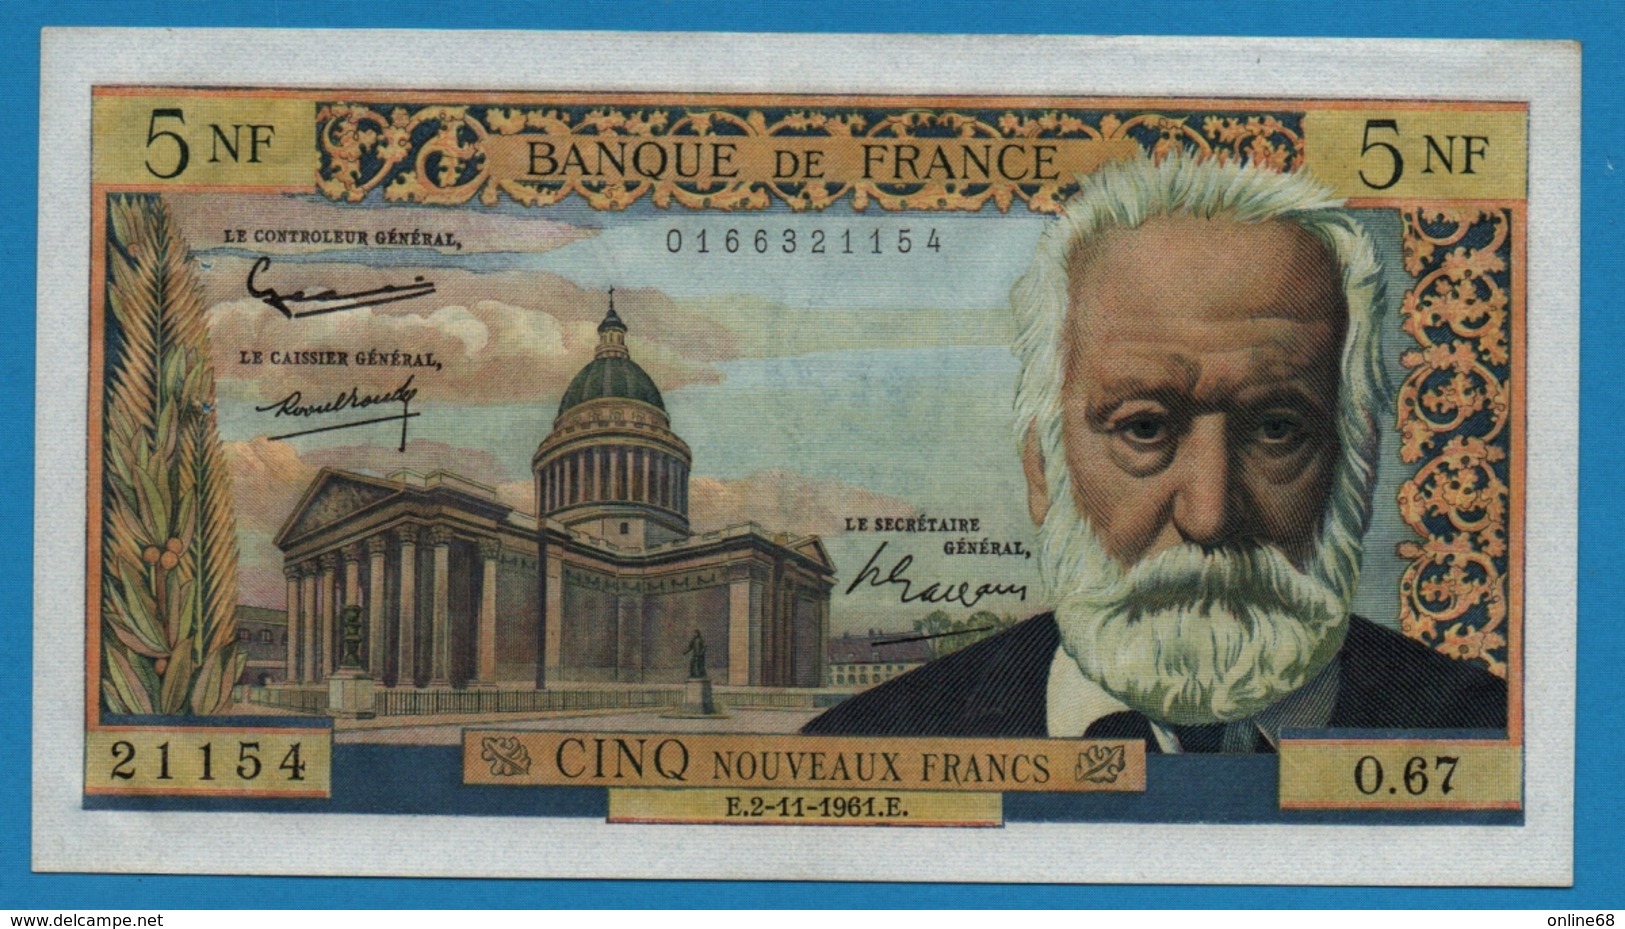 FRANCE 5 Nouveaux Francs 2.11.1961 "V.Hugo"		# O.67  21154 - 5 NF 1959-1965 ''Victor Hugo''